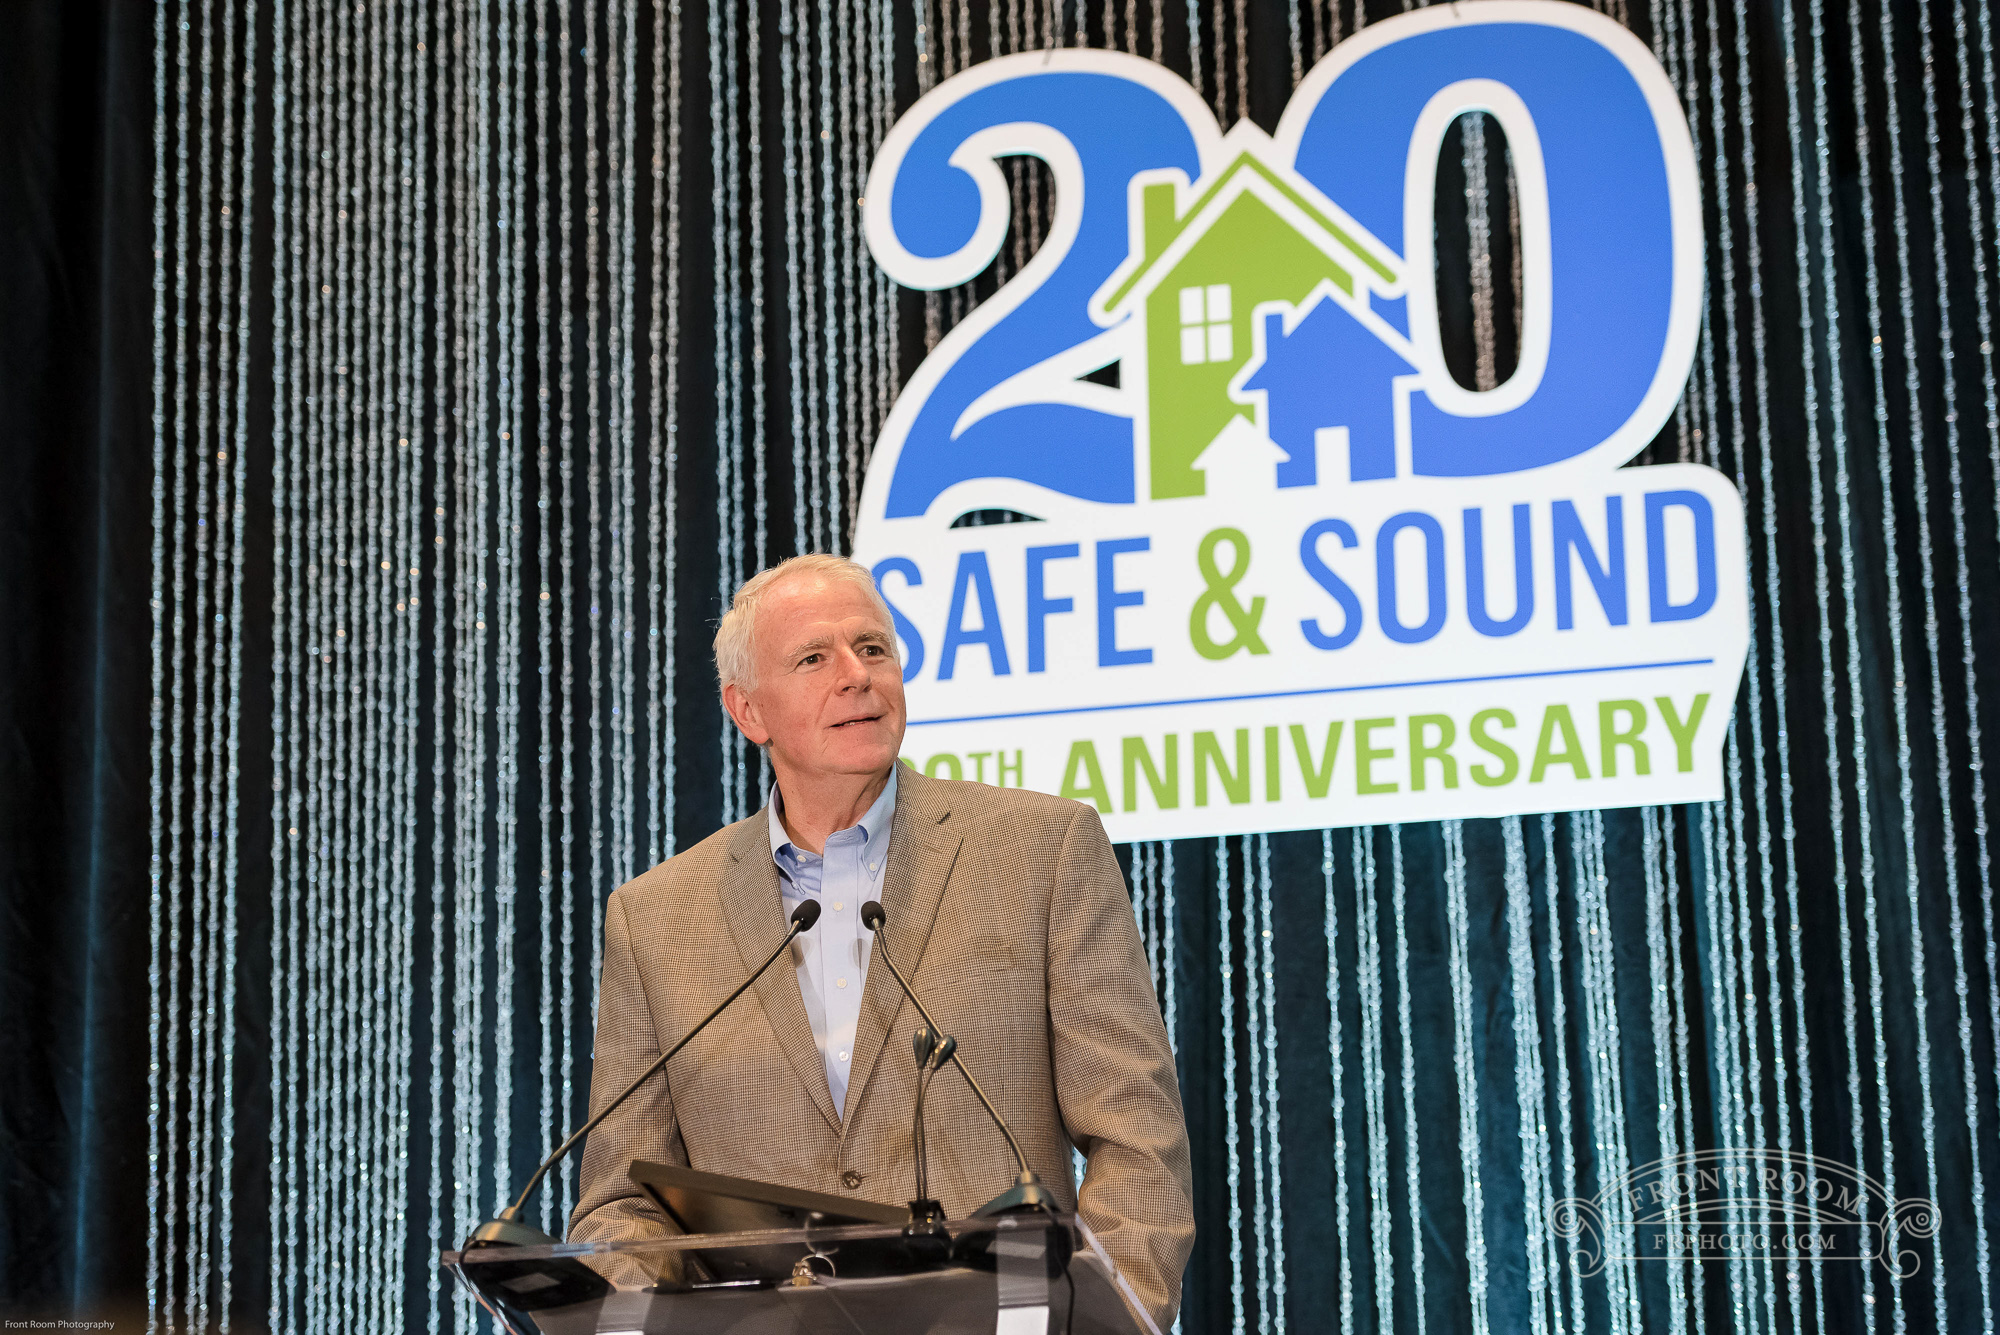 Event Profile: Safe & Sound 20th Anniversary